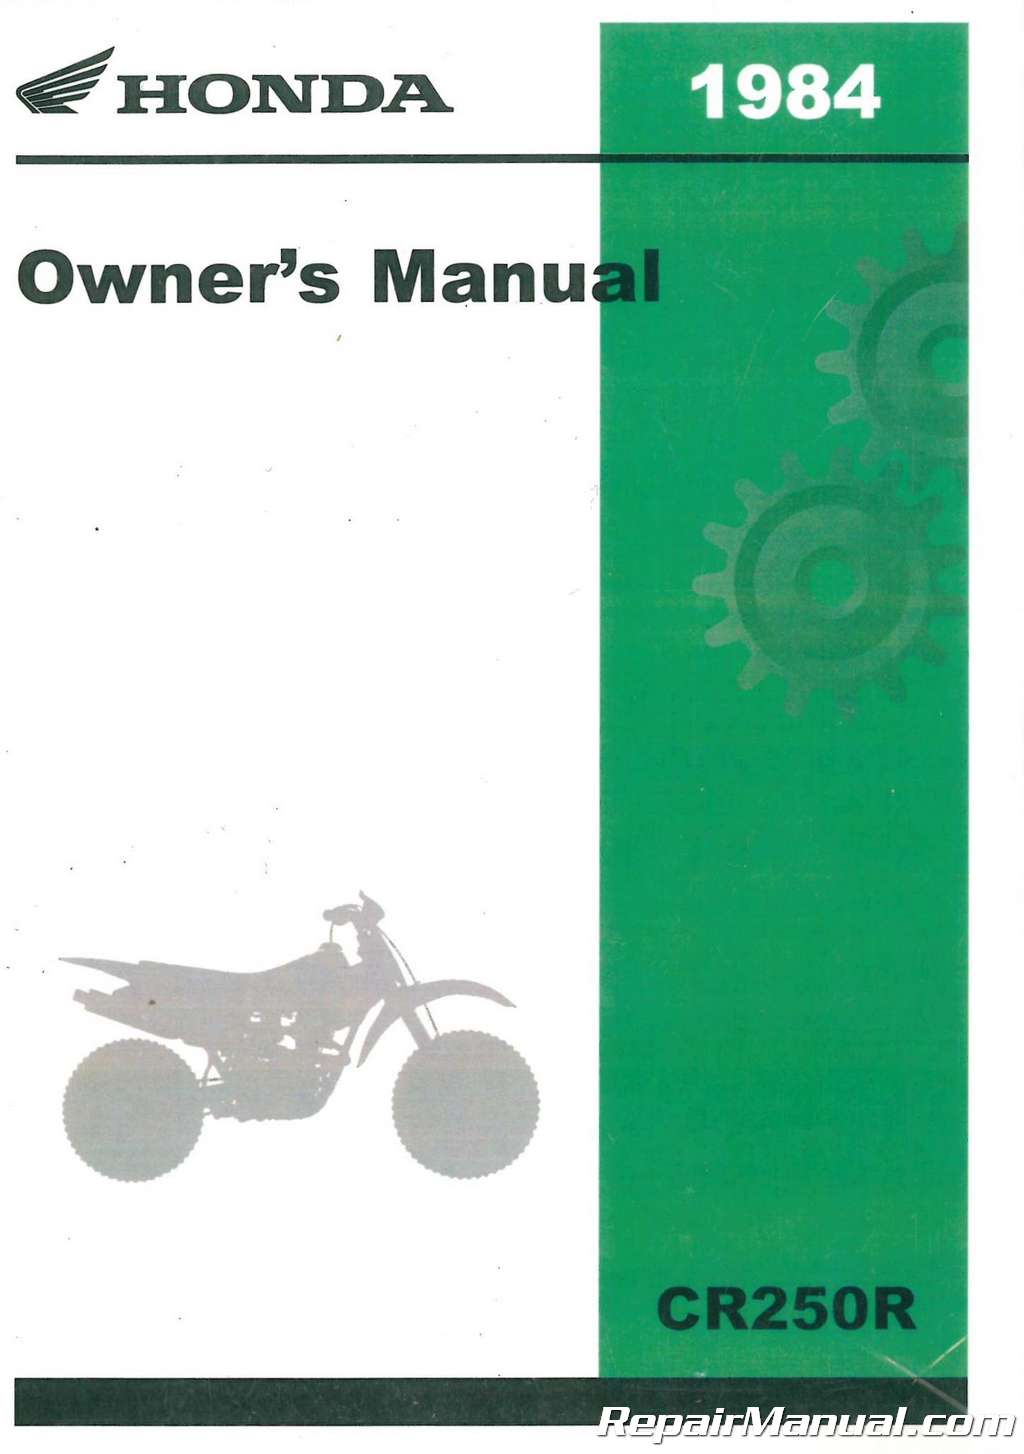 Honda Parts 1984-1989 CR250R List Catalog Motorcycle Manual 